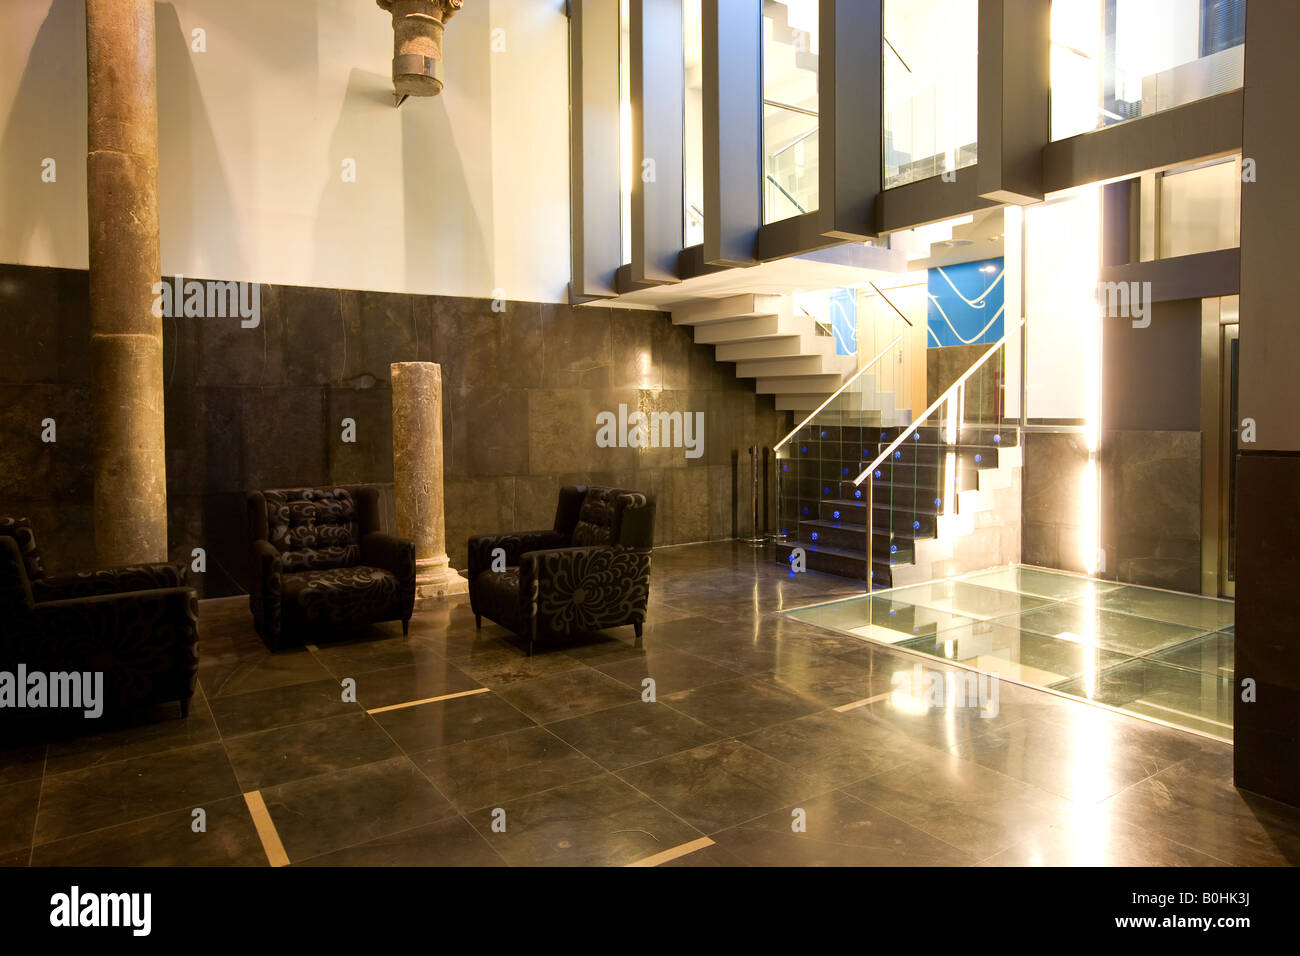 La lobby e la scala del Hotel Silken Zentro, un hotel design dell'Hoteles Silken gruppo, Saragozza o Saragozza, Castiglia, un Foto Stock